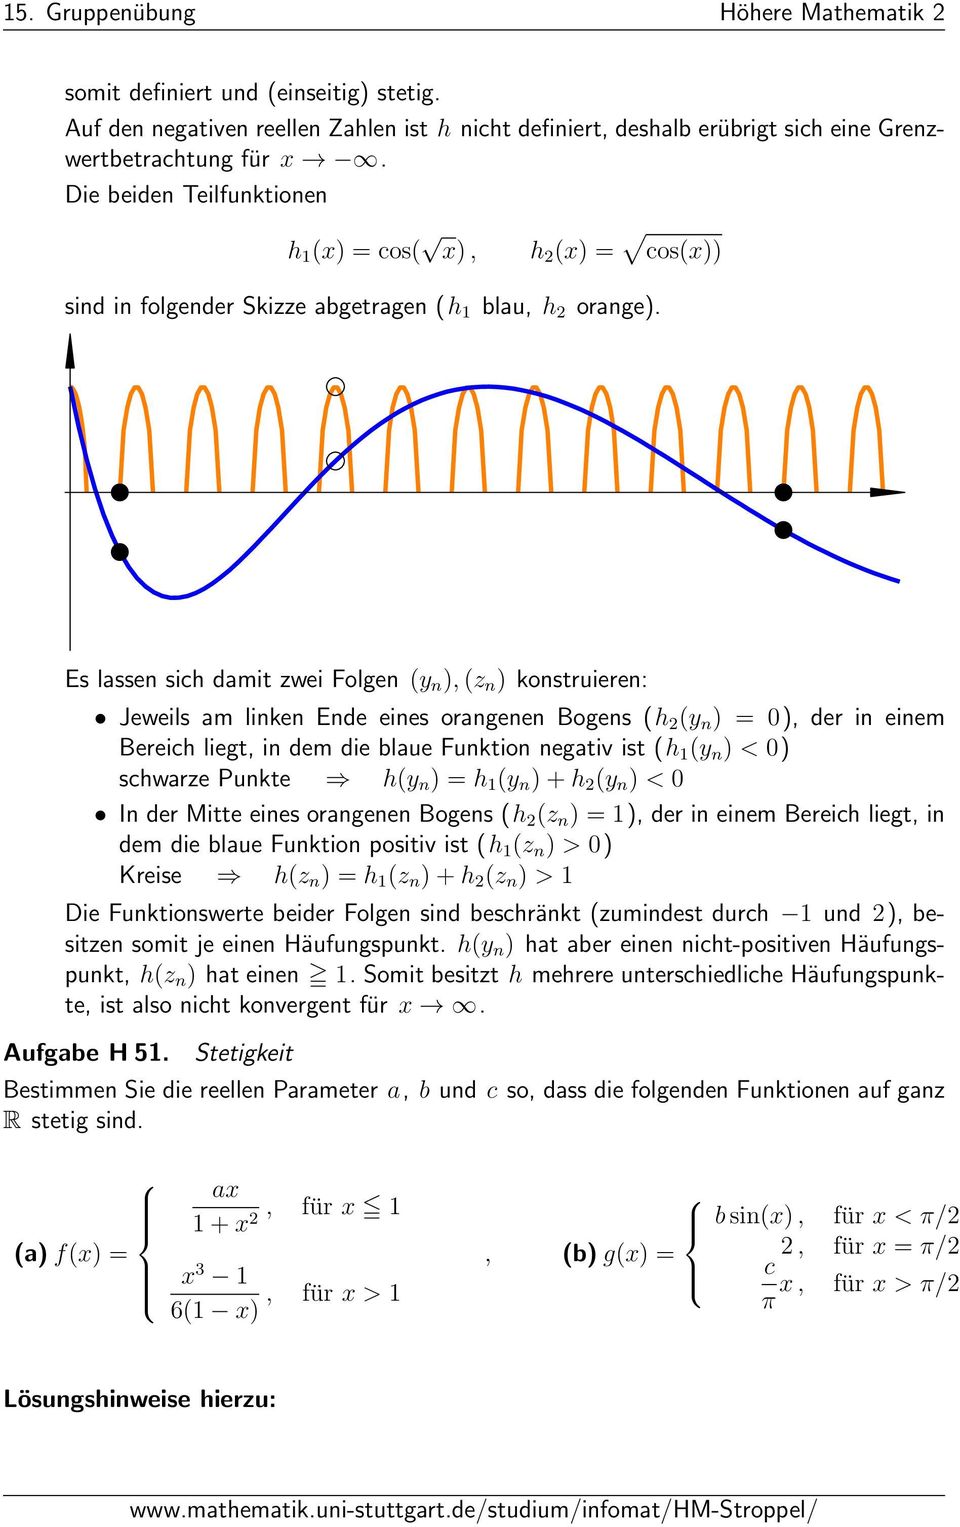 Es lassen sich damit zwei Folgen y n ),z n ) konstruieren: Jeweils am linken Ende eines orangenen Bogens h y n ) ), der in einem Bereich liegt, in dem die blaue Funktion negativ ist h y n ) < )